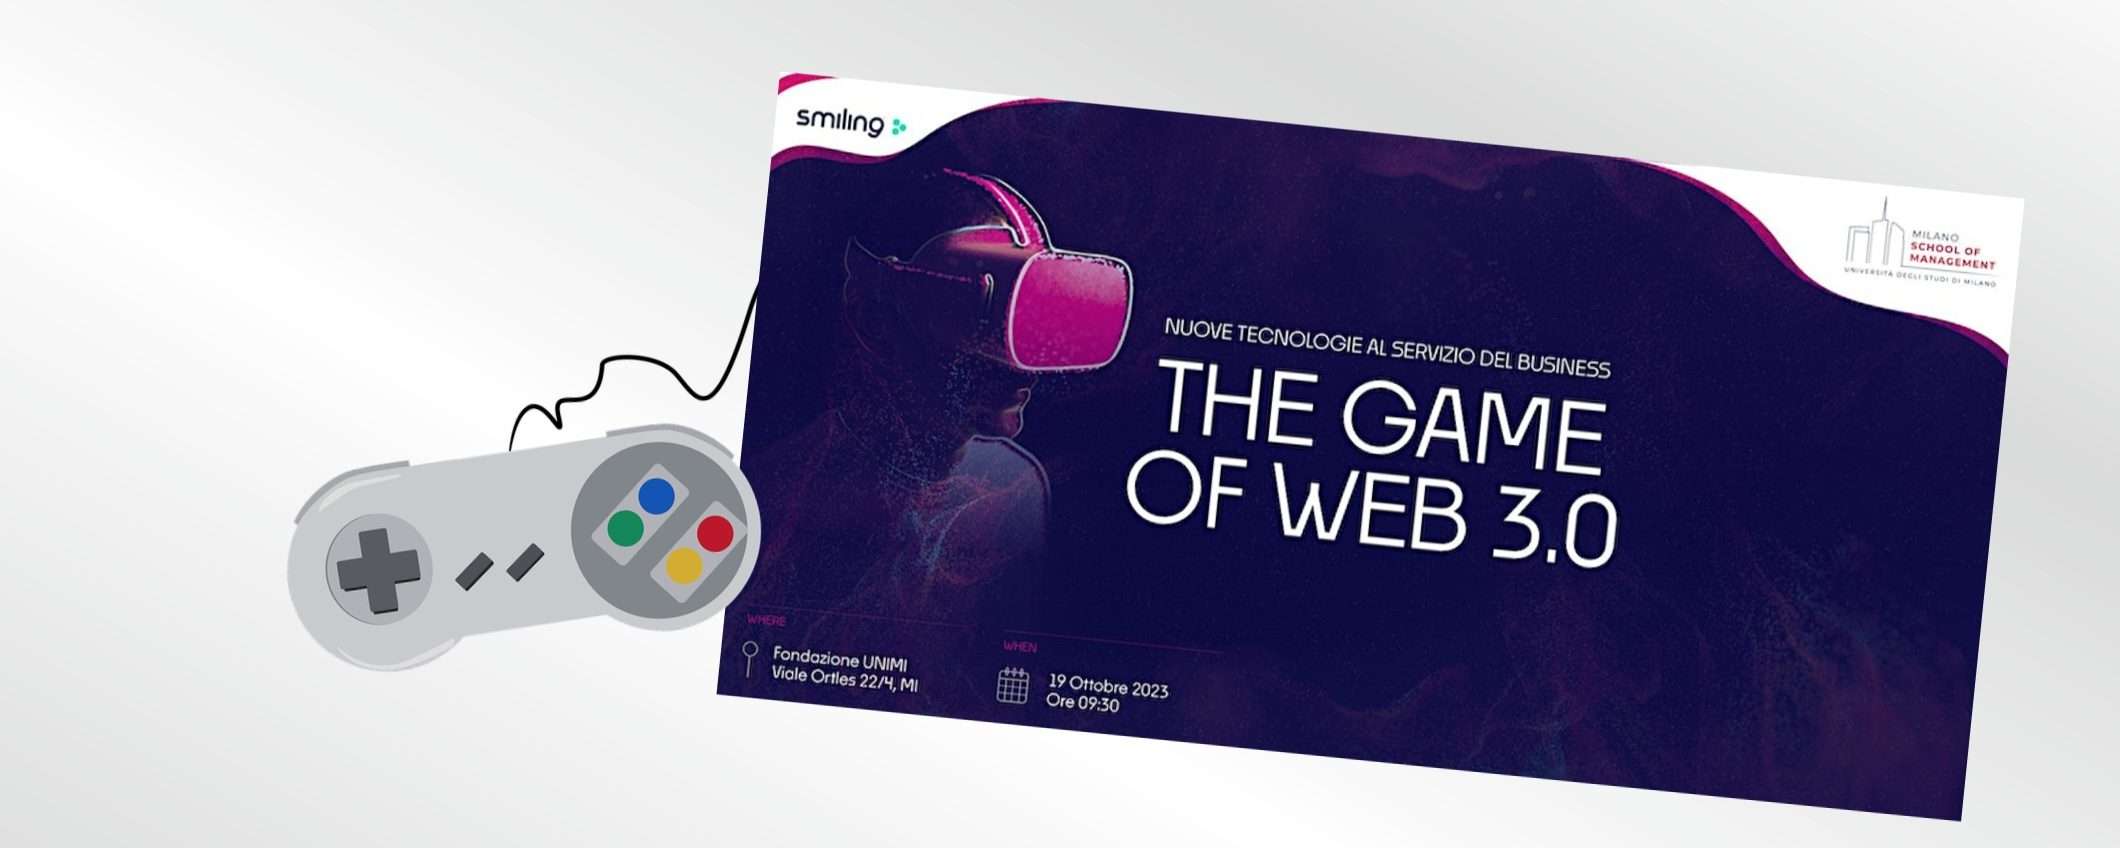 The Game of Web 3.0: come sarà il futuro?